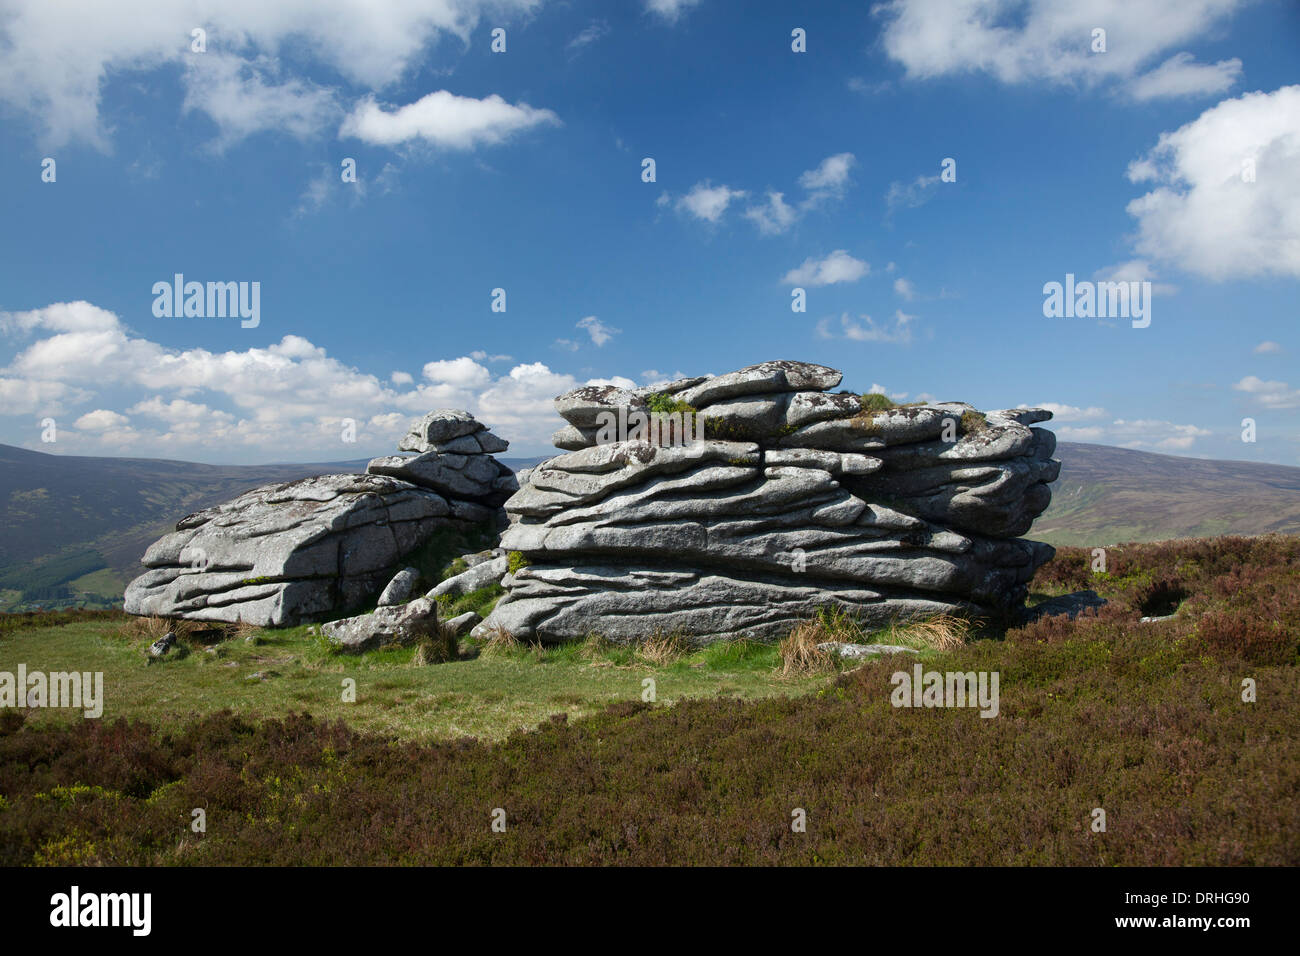 La tor de granit de Fitzwilliam du conducteur, près du sommet du Knocknagun, sur la frontière des comtés de Dublin et Wicklow, Irlande. Banque D'Images